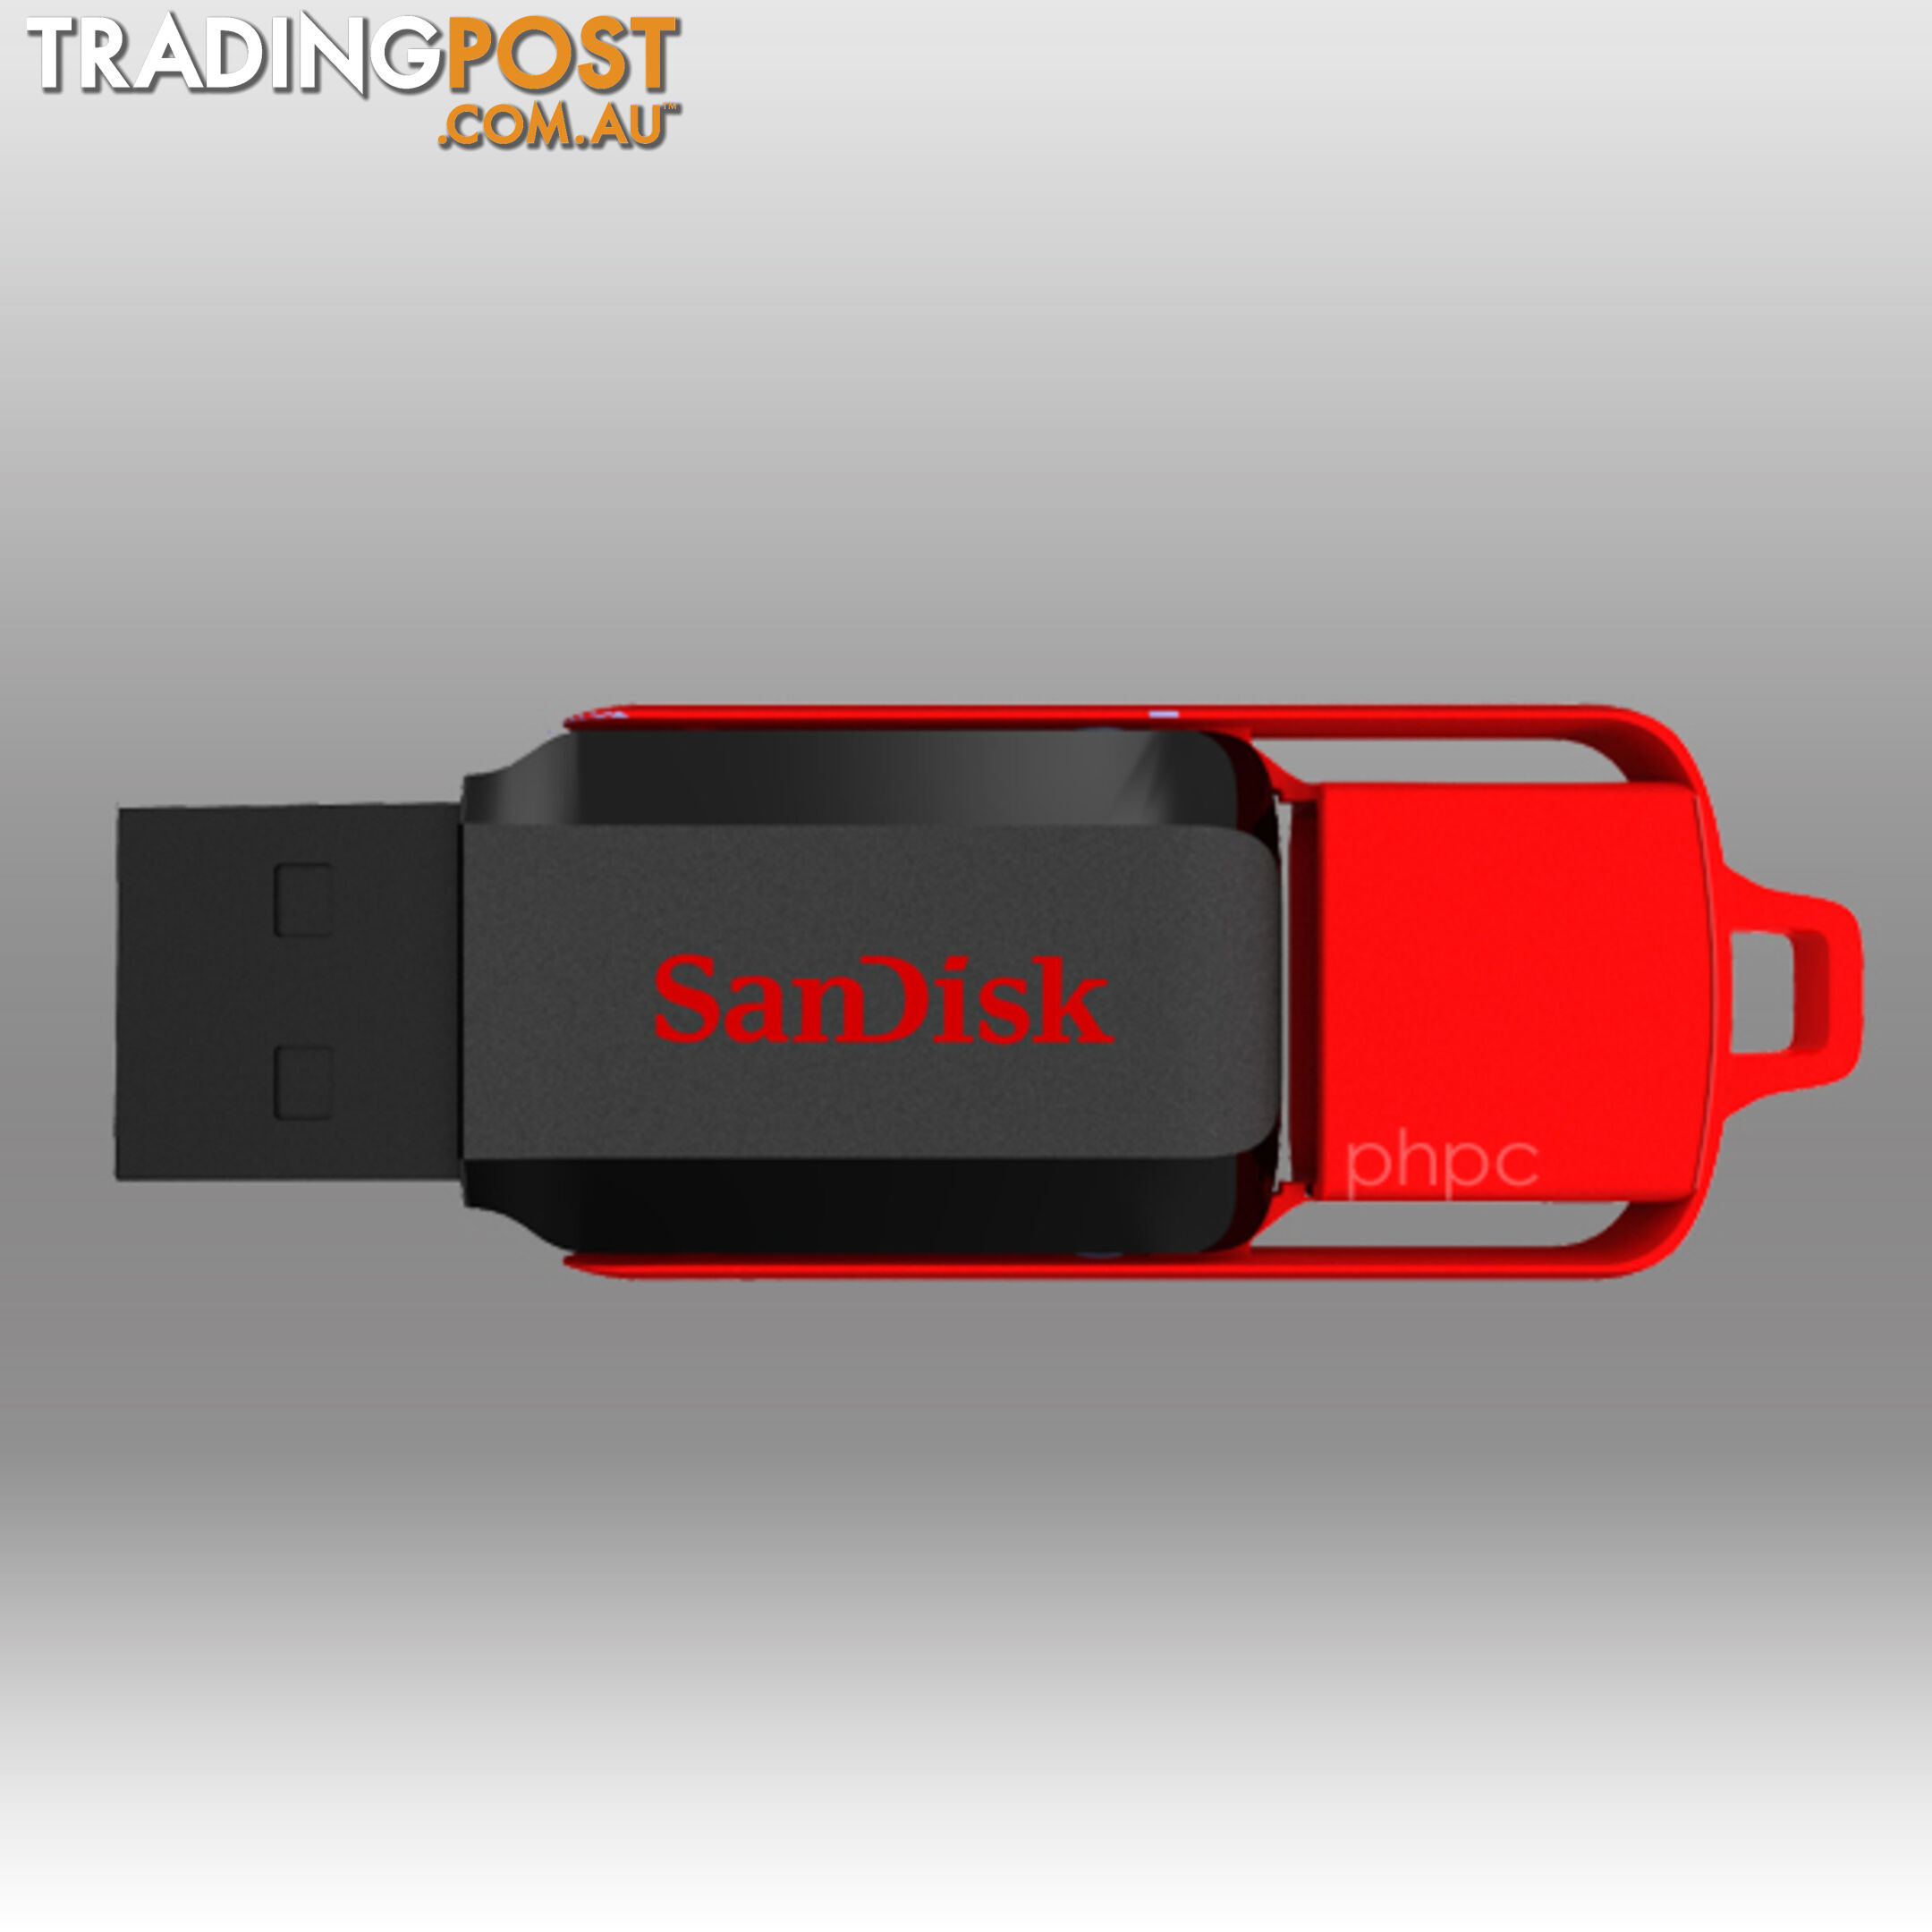 Sandisk Cruzer Switch CZ52 32GB USB Flash Drive